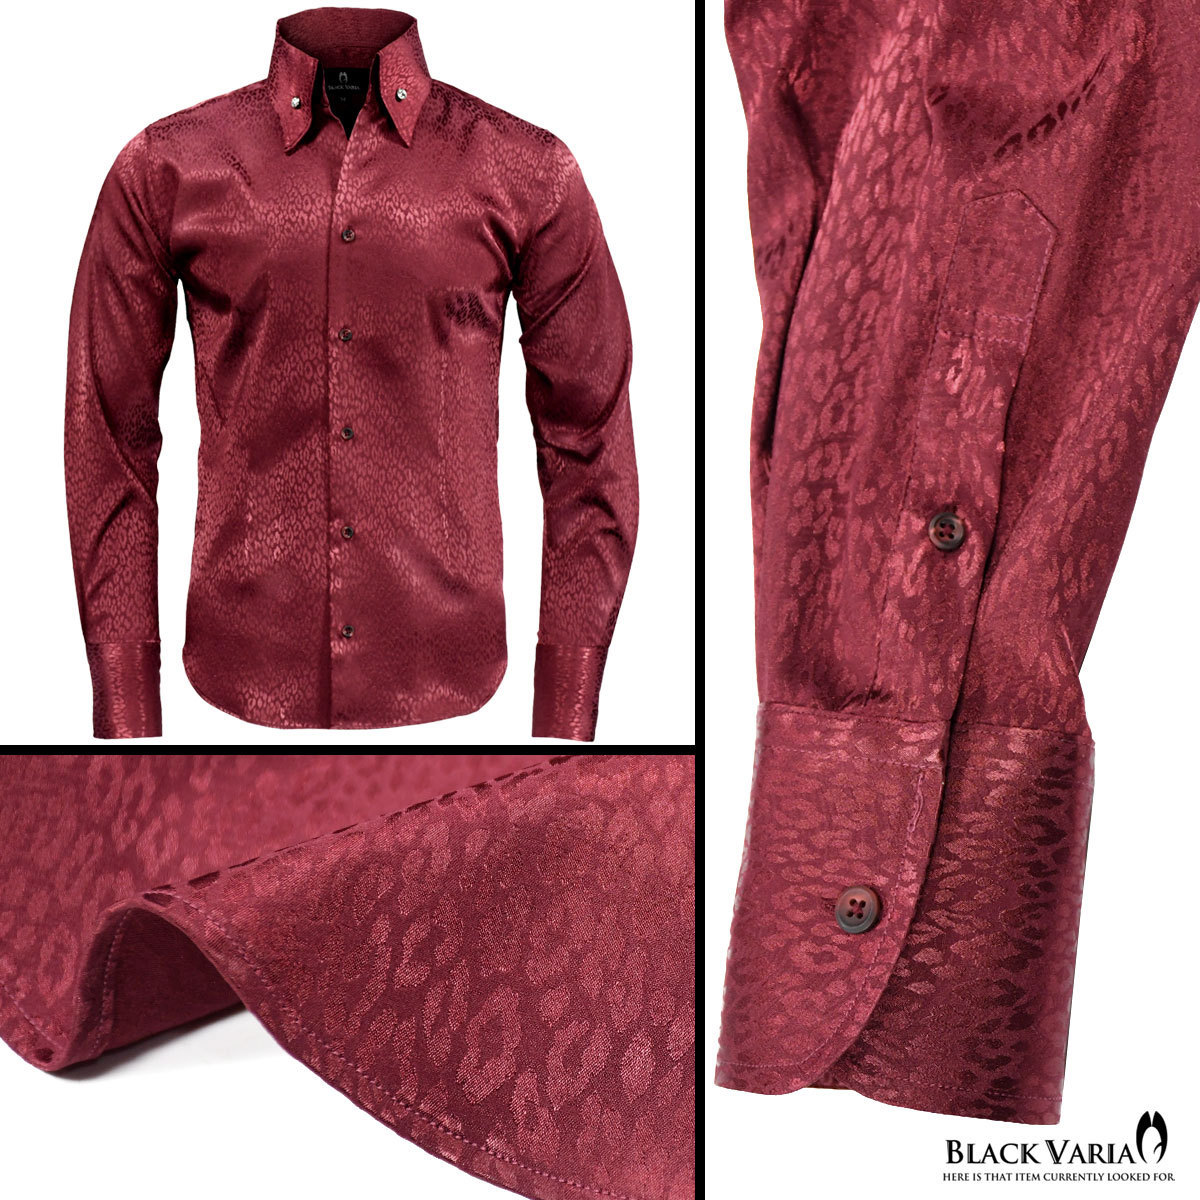 191853-winS BLACK VARIA ジャガード豹柄 スキッパー スワロフスキーBD ドレスシャツ スリム メンズ(ブラックダイヤ釦 ワイン赤) XL 衣装_画像5